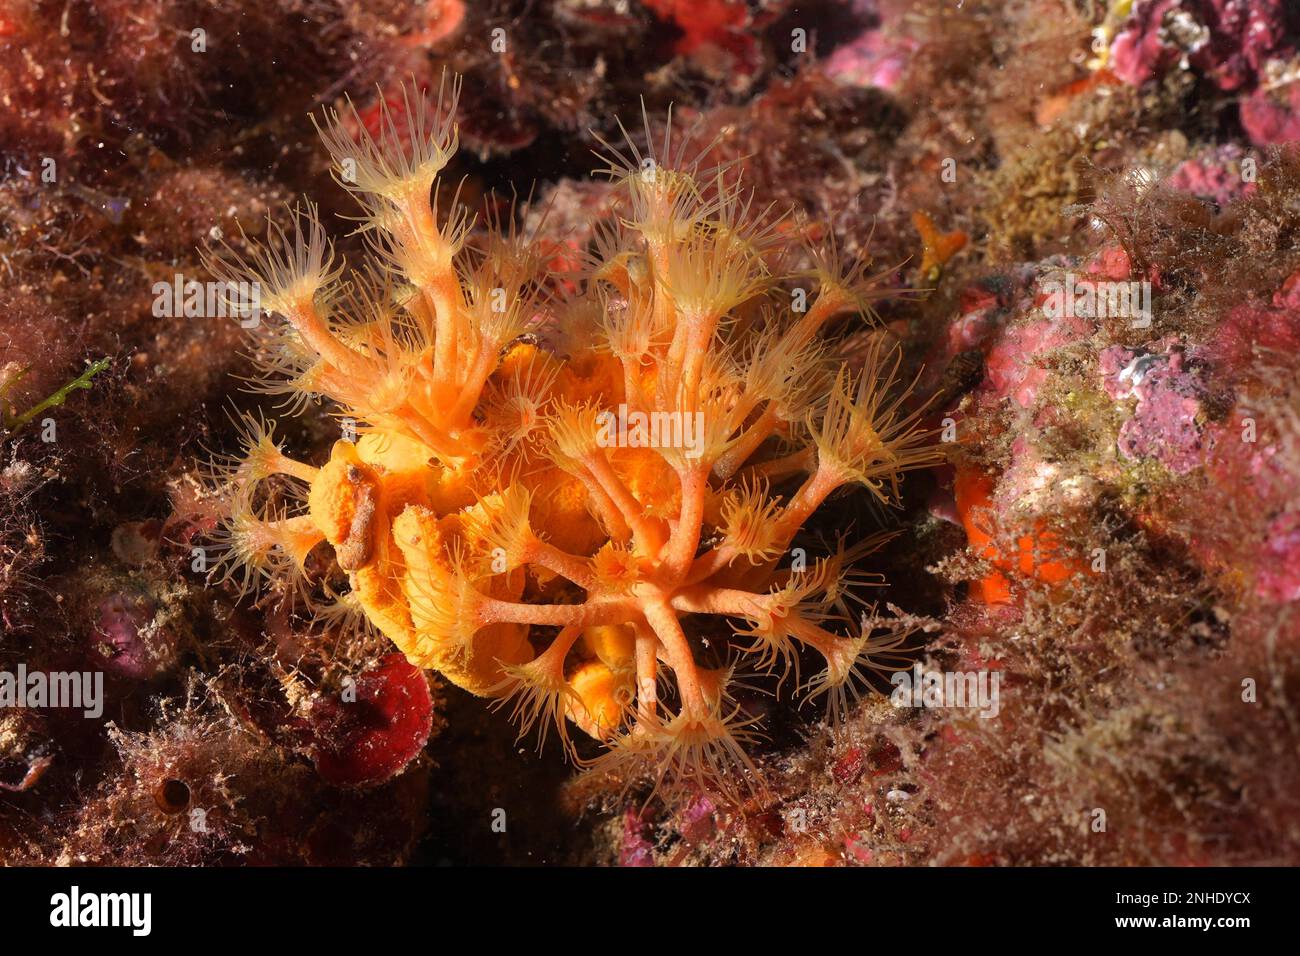 Yellow cluster anemone (Parazoanthus axinellae), dive site marine reserve Cap de Creus, Rosas, Costa Brava, Spain, Mediterranean Sea Stock Photo